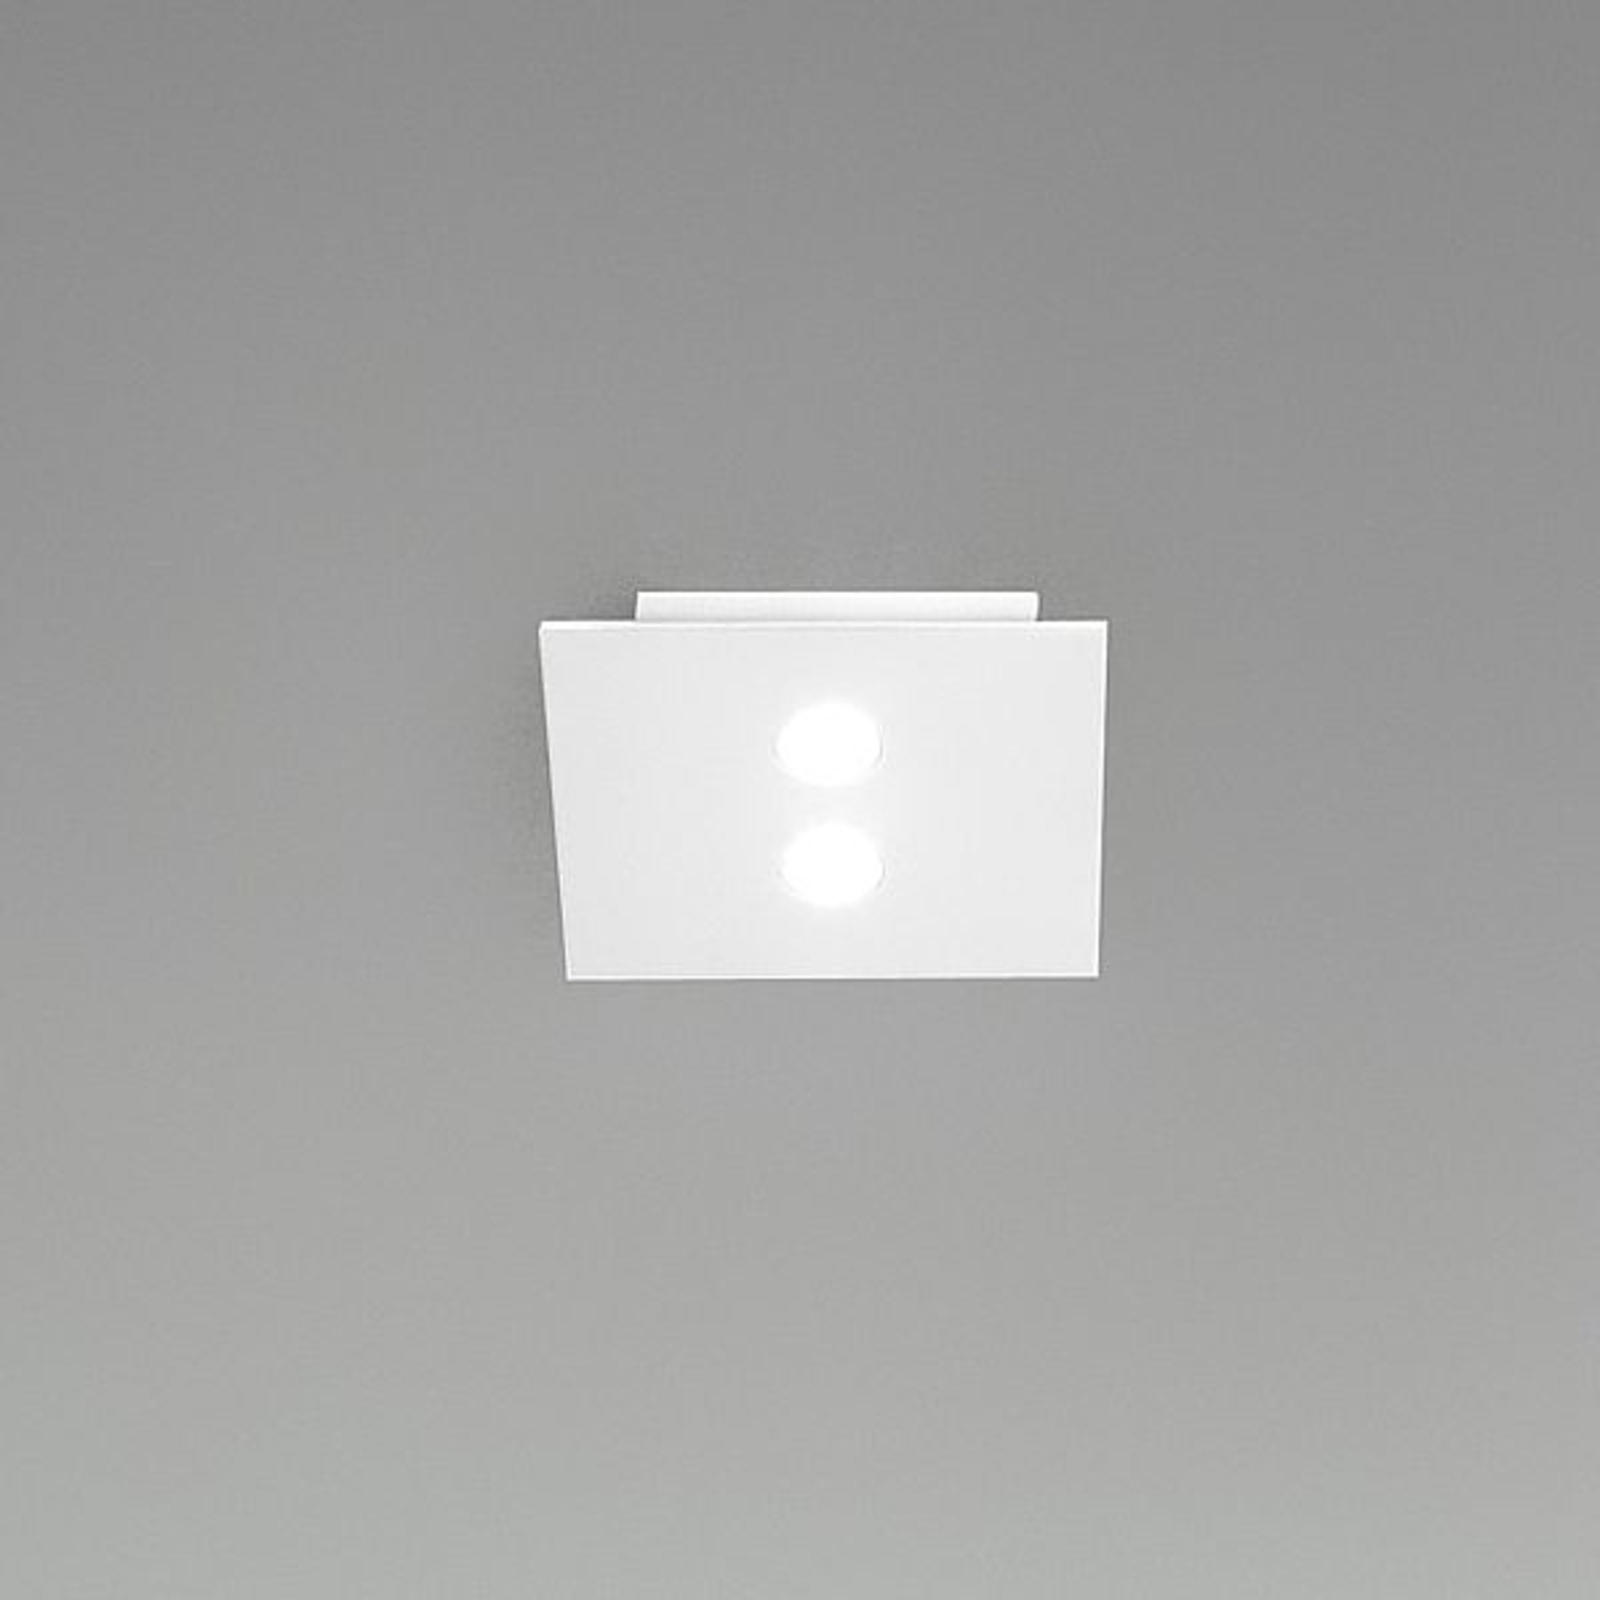 Small LED ceiling light Slim, 2-bulb, white